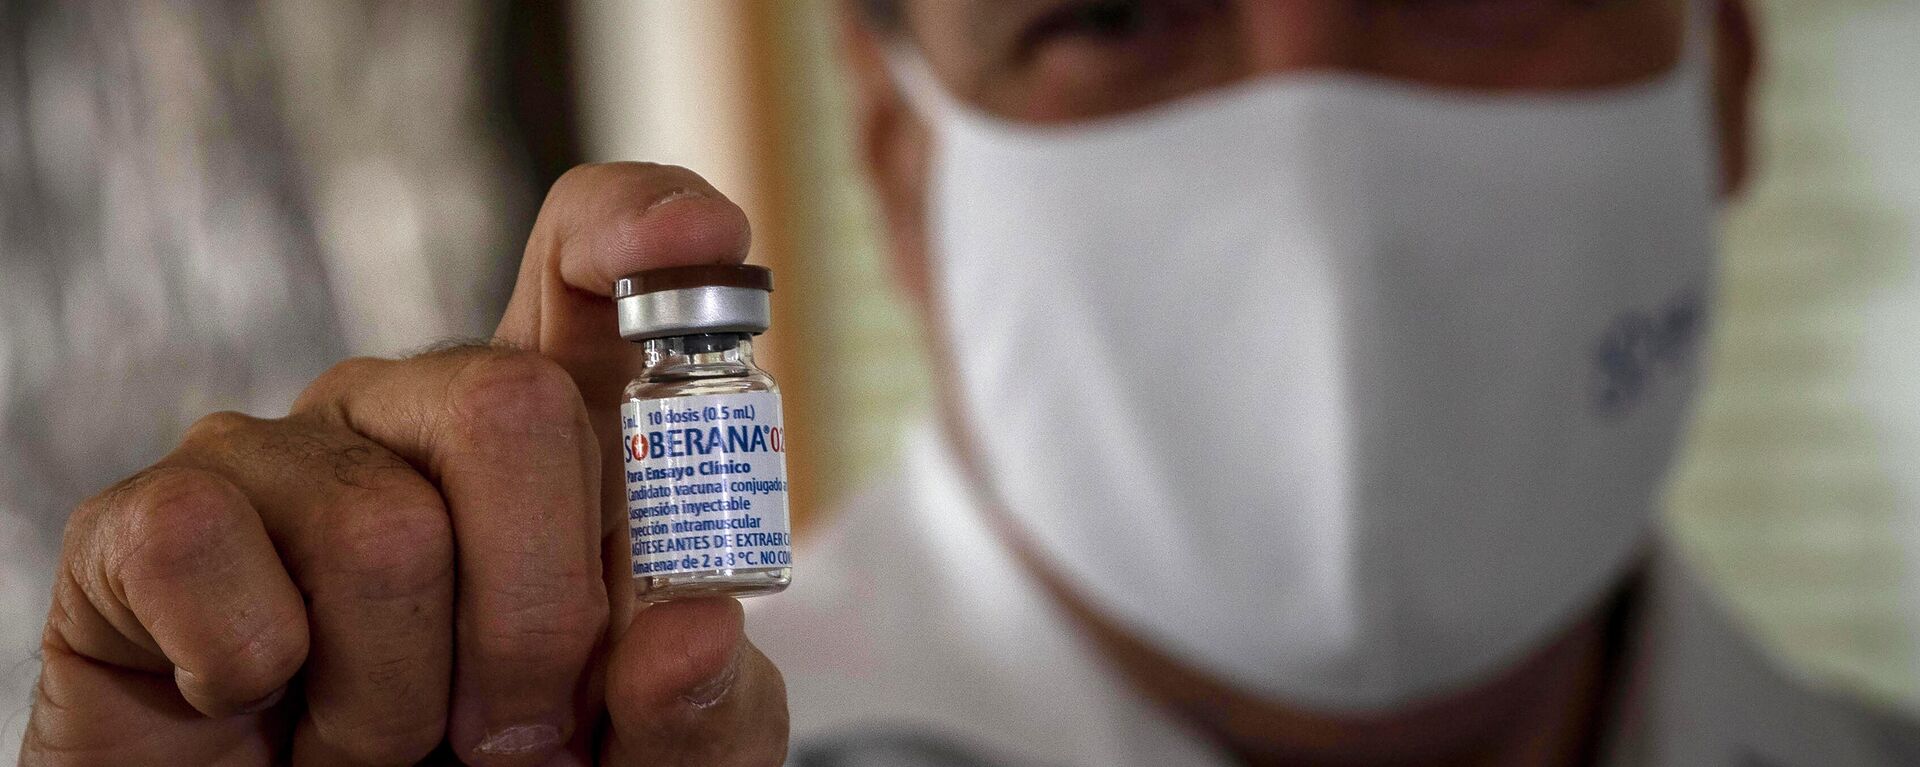 Un médico sostiene la vacuna cubana Soberana 02 contra COVID-19 - Sputnik Mundo, 1920, 01.11.2021